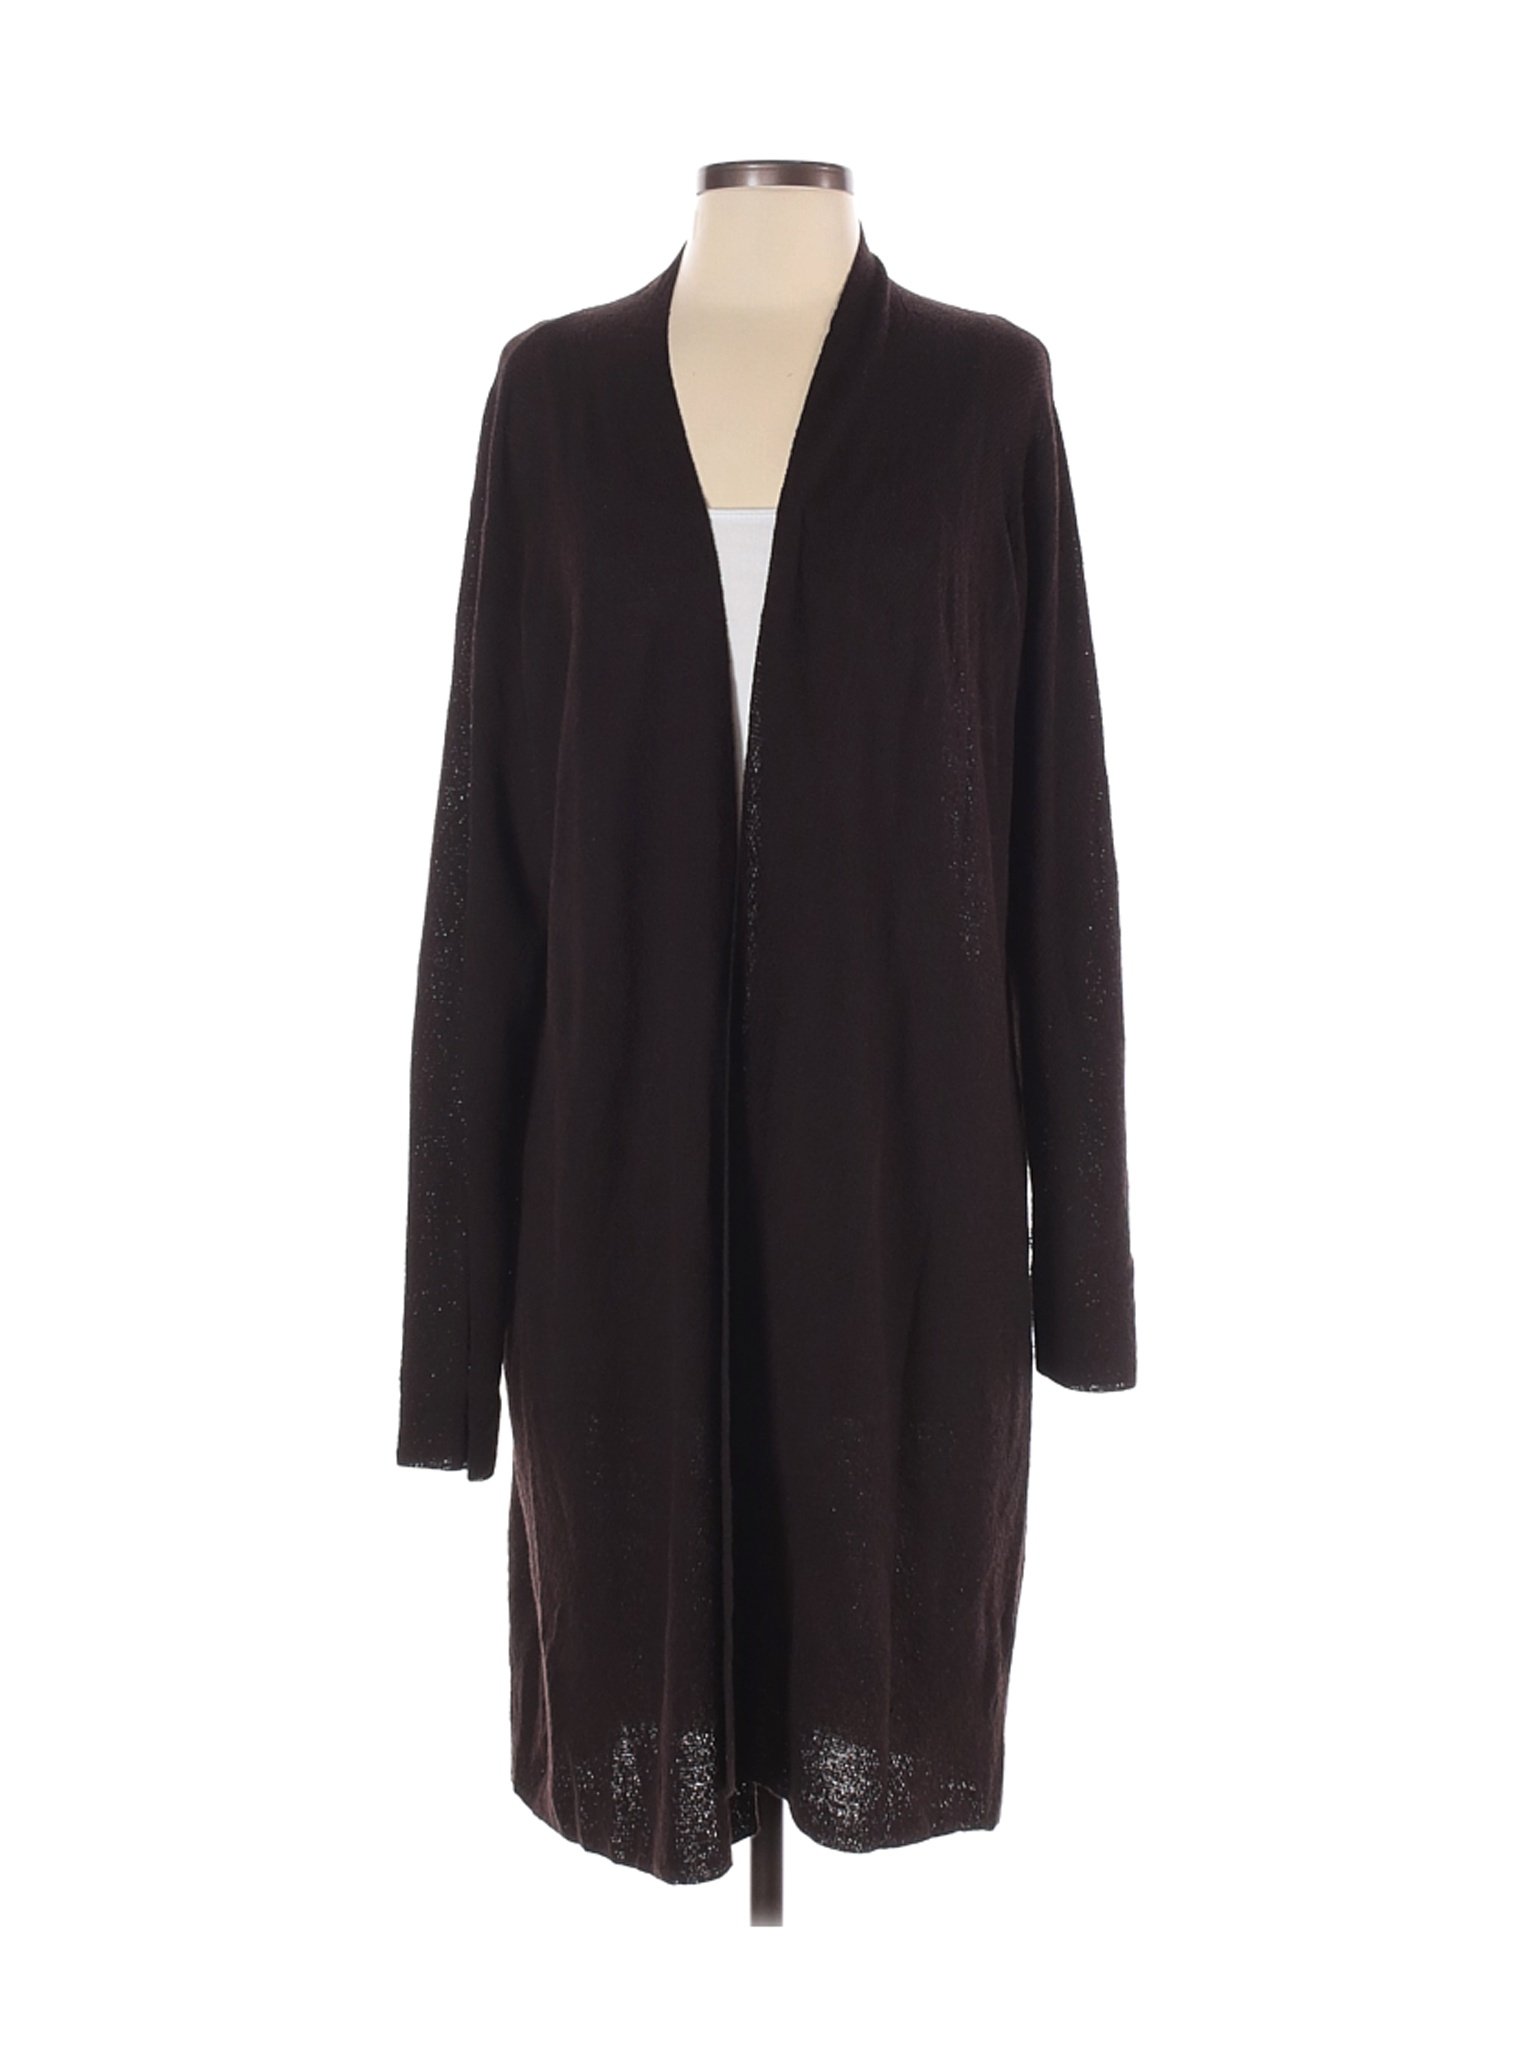 Eileen Fisher Women Black Wool Cardigan L | eBay